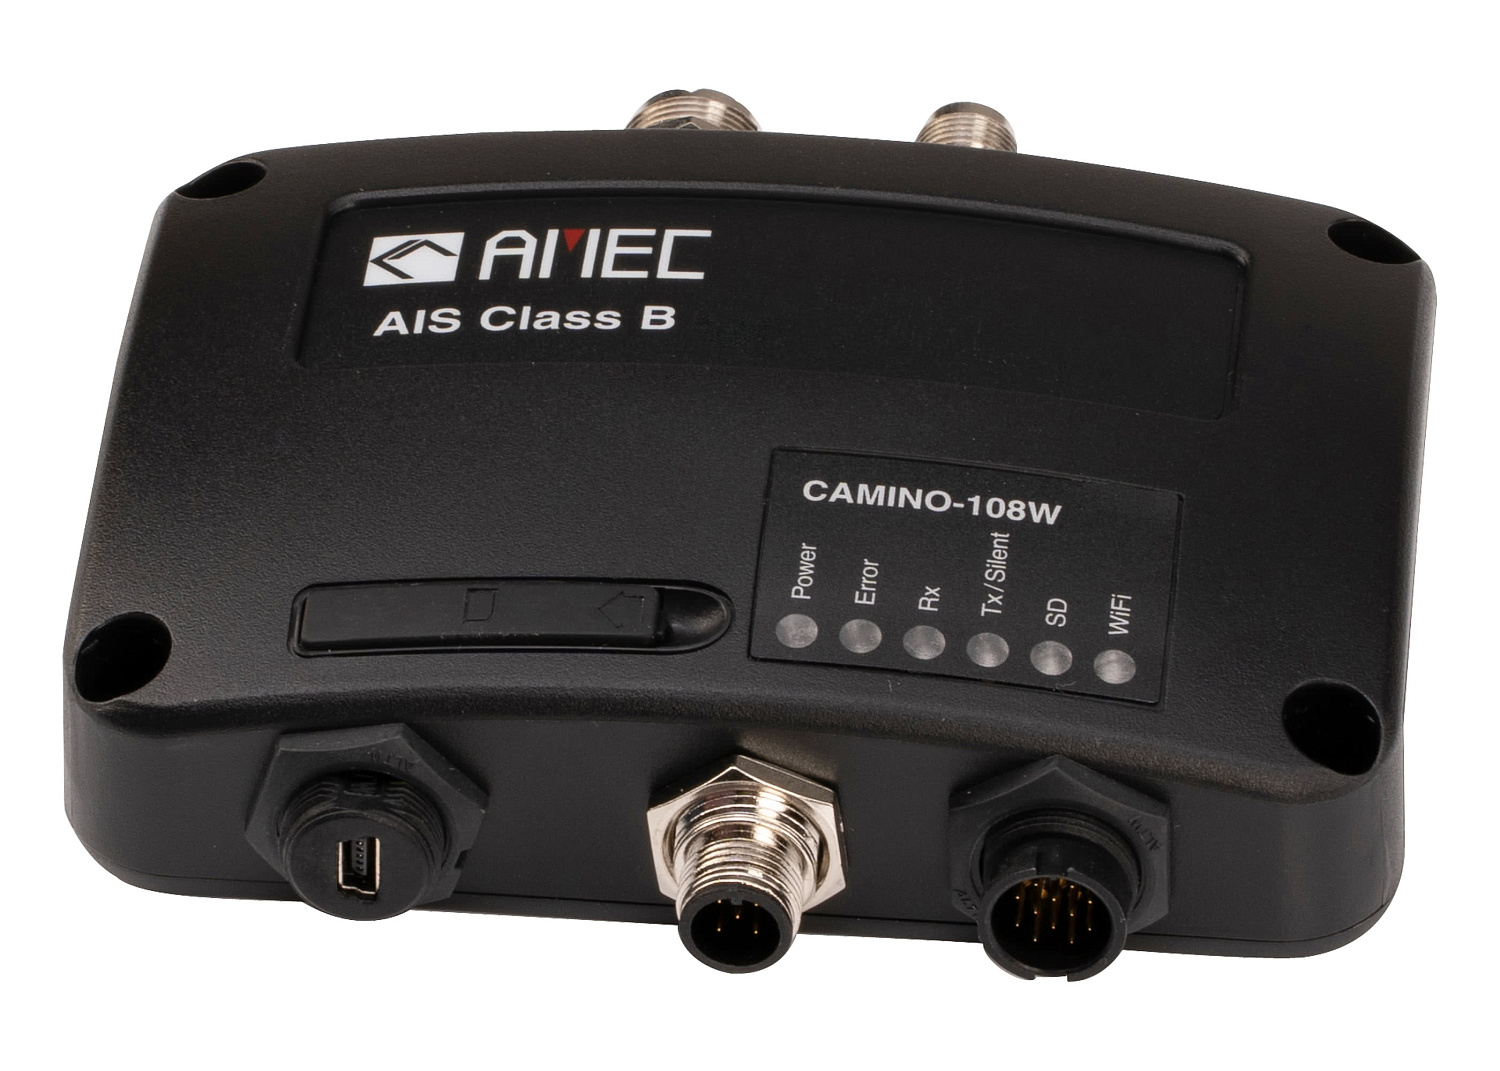 AMEC CAMINO-108W AIS Transponder with WiFi / GPS patch antenna